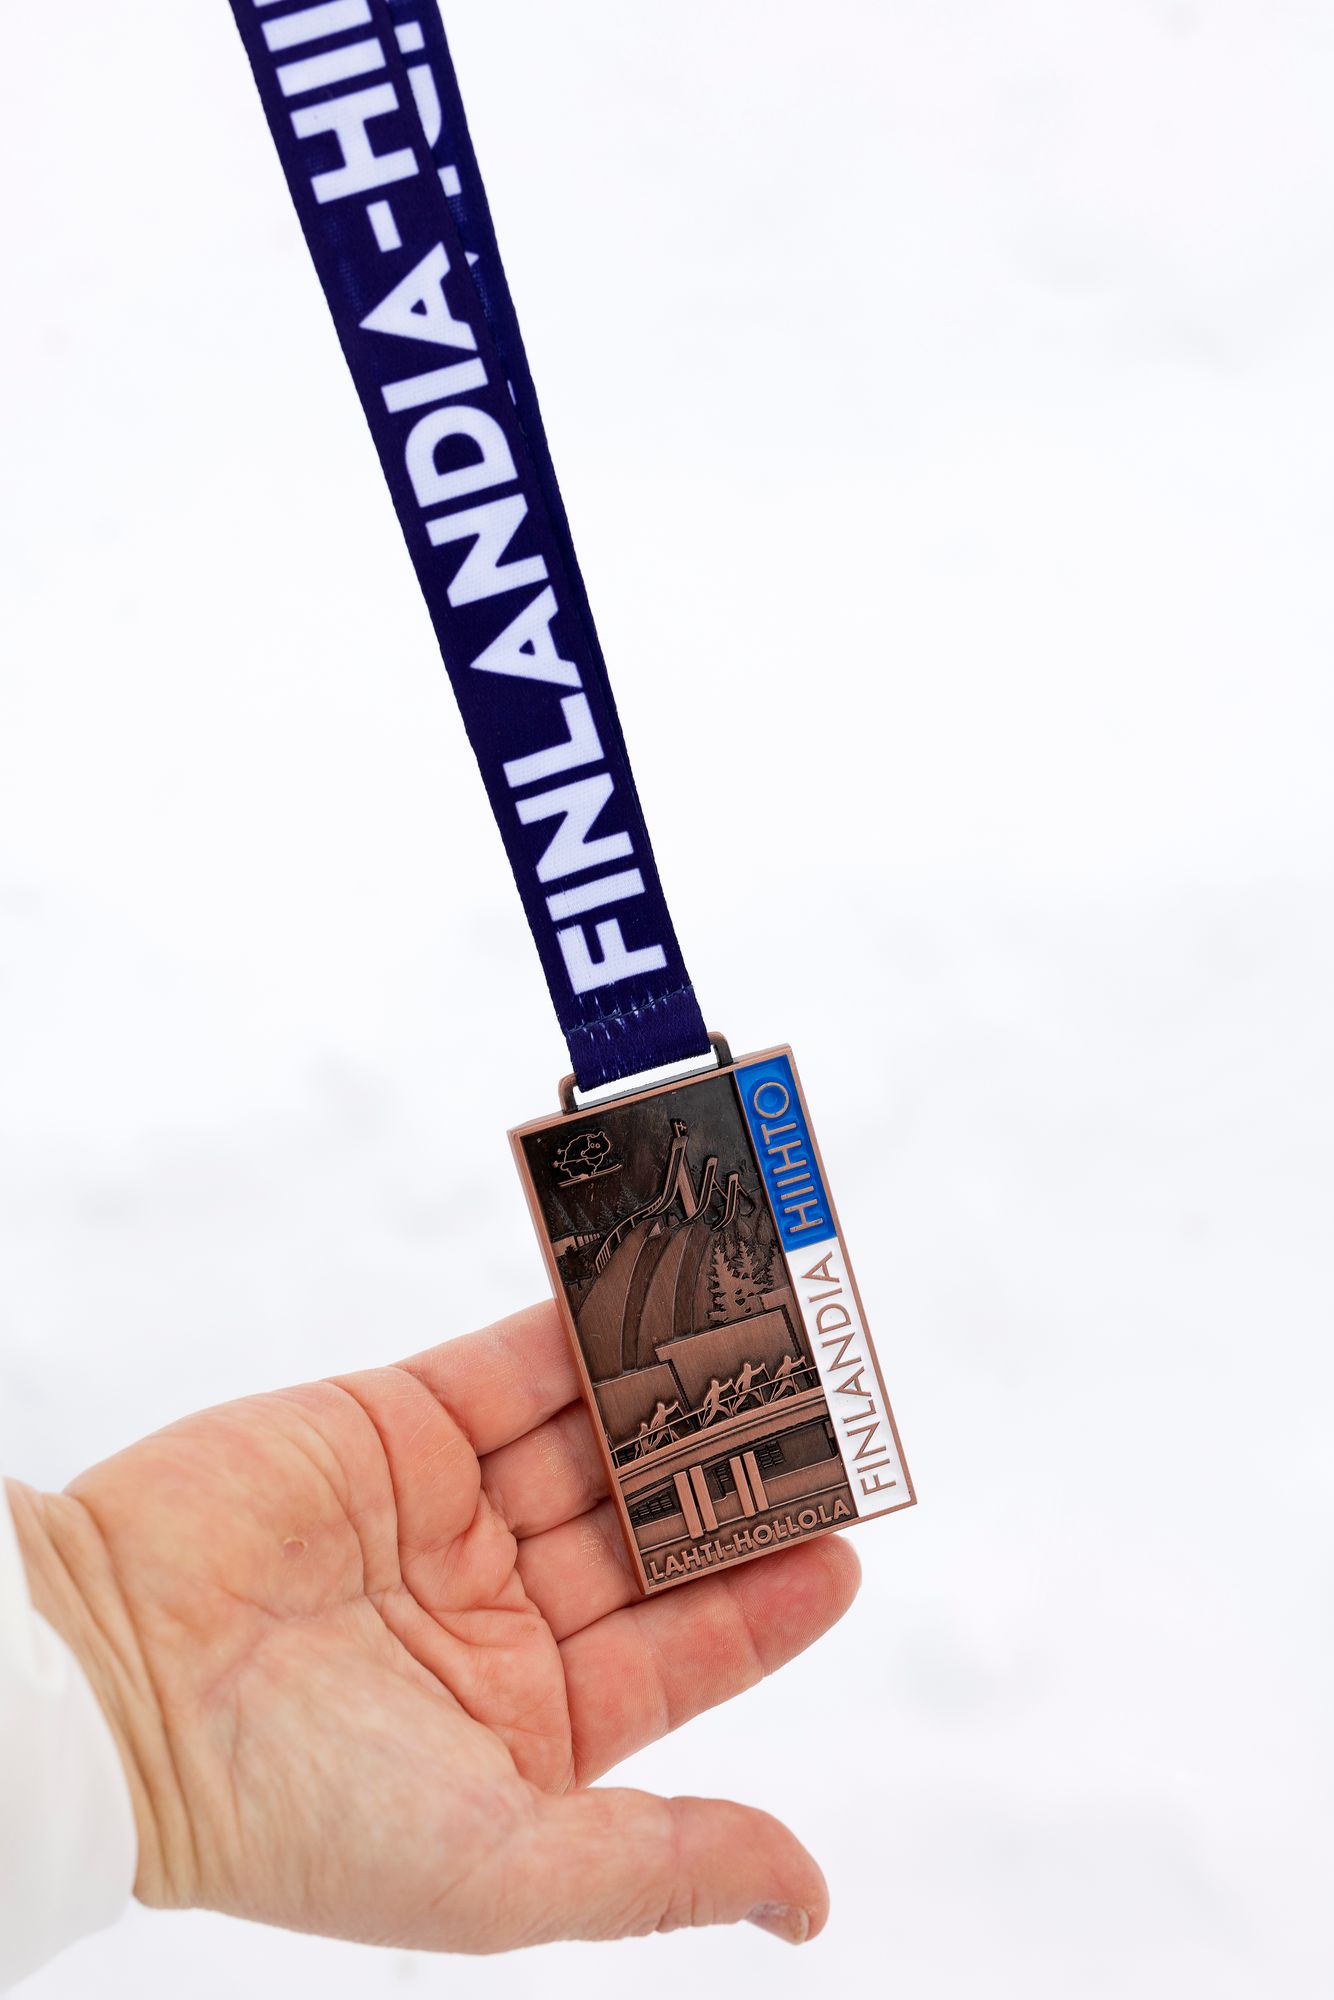 Mitali Finlandia-hiihdosta on samalla muisto huikeasta saavutuksesta. © Mikko Nikkinen